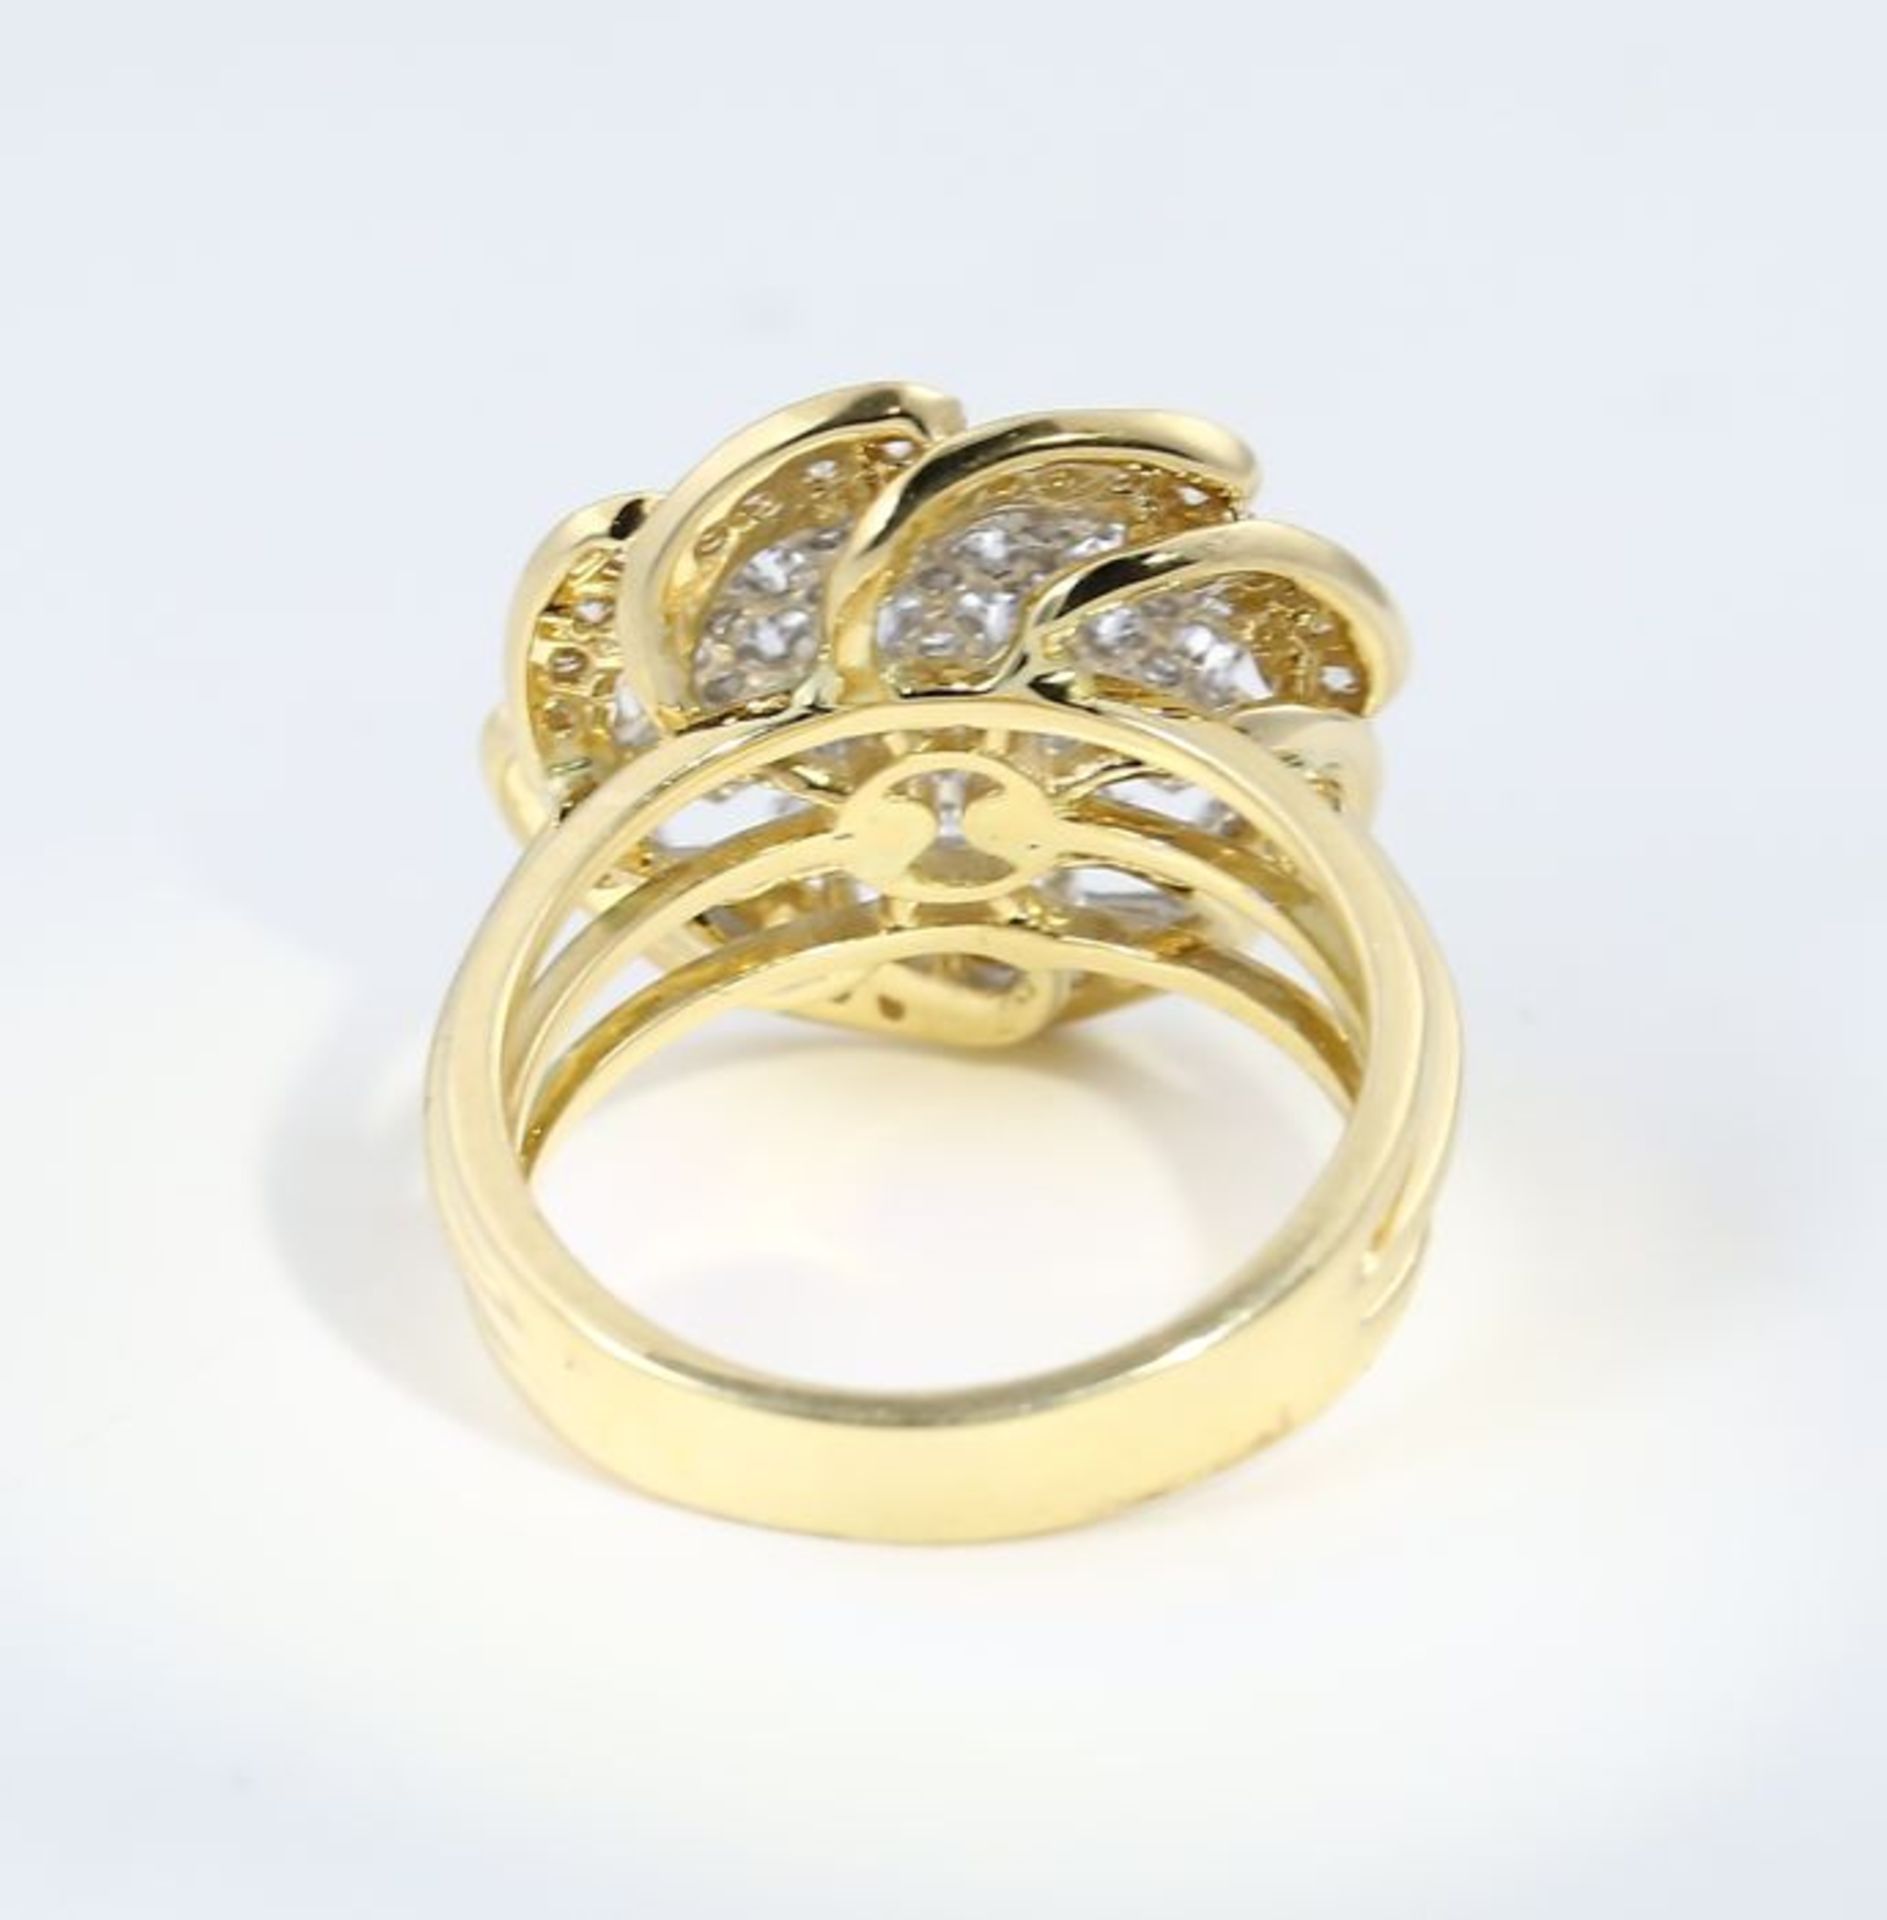 IGI Certified 18 K / 750 Yellow Gold Designer Diamond Ring - Image 9 of 9